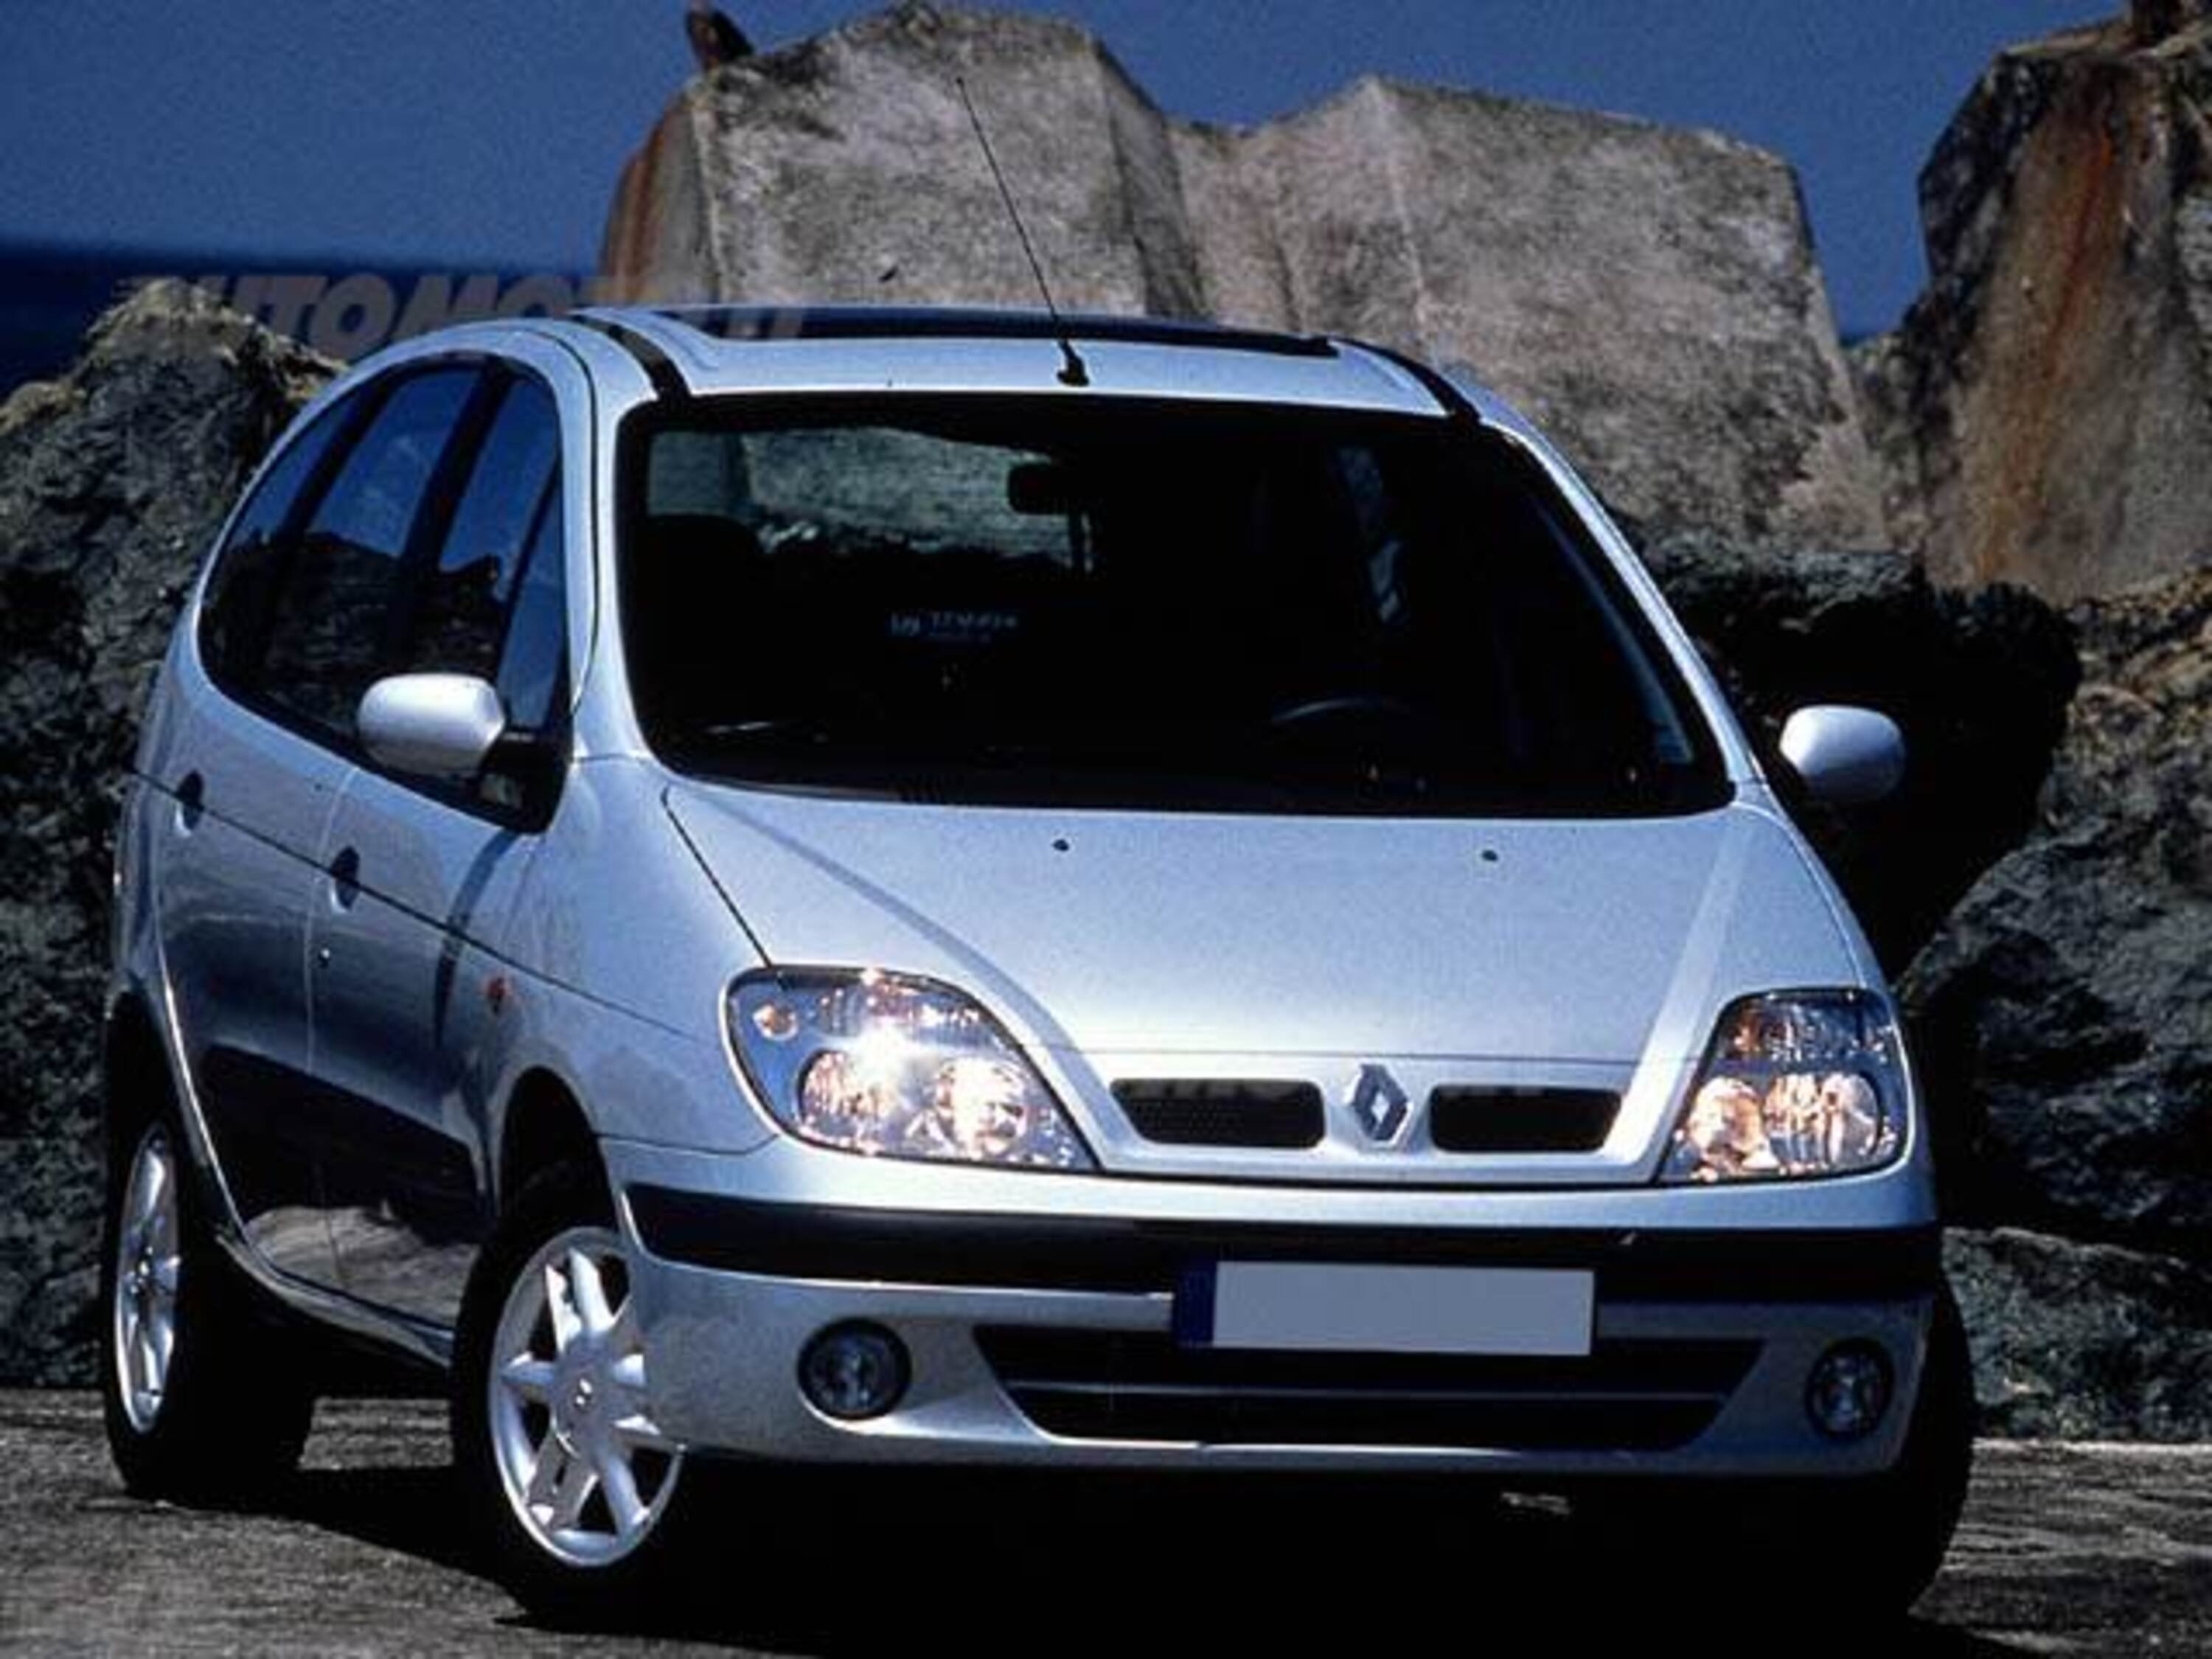 Renault Scenic - informazioni tecniche, prezzo, allestimenti